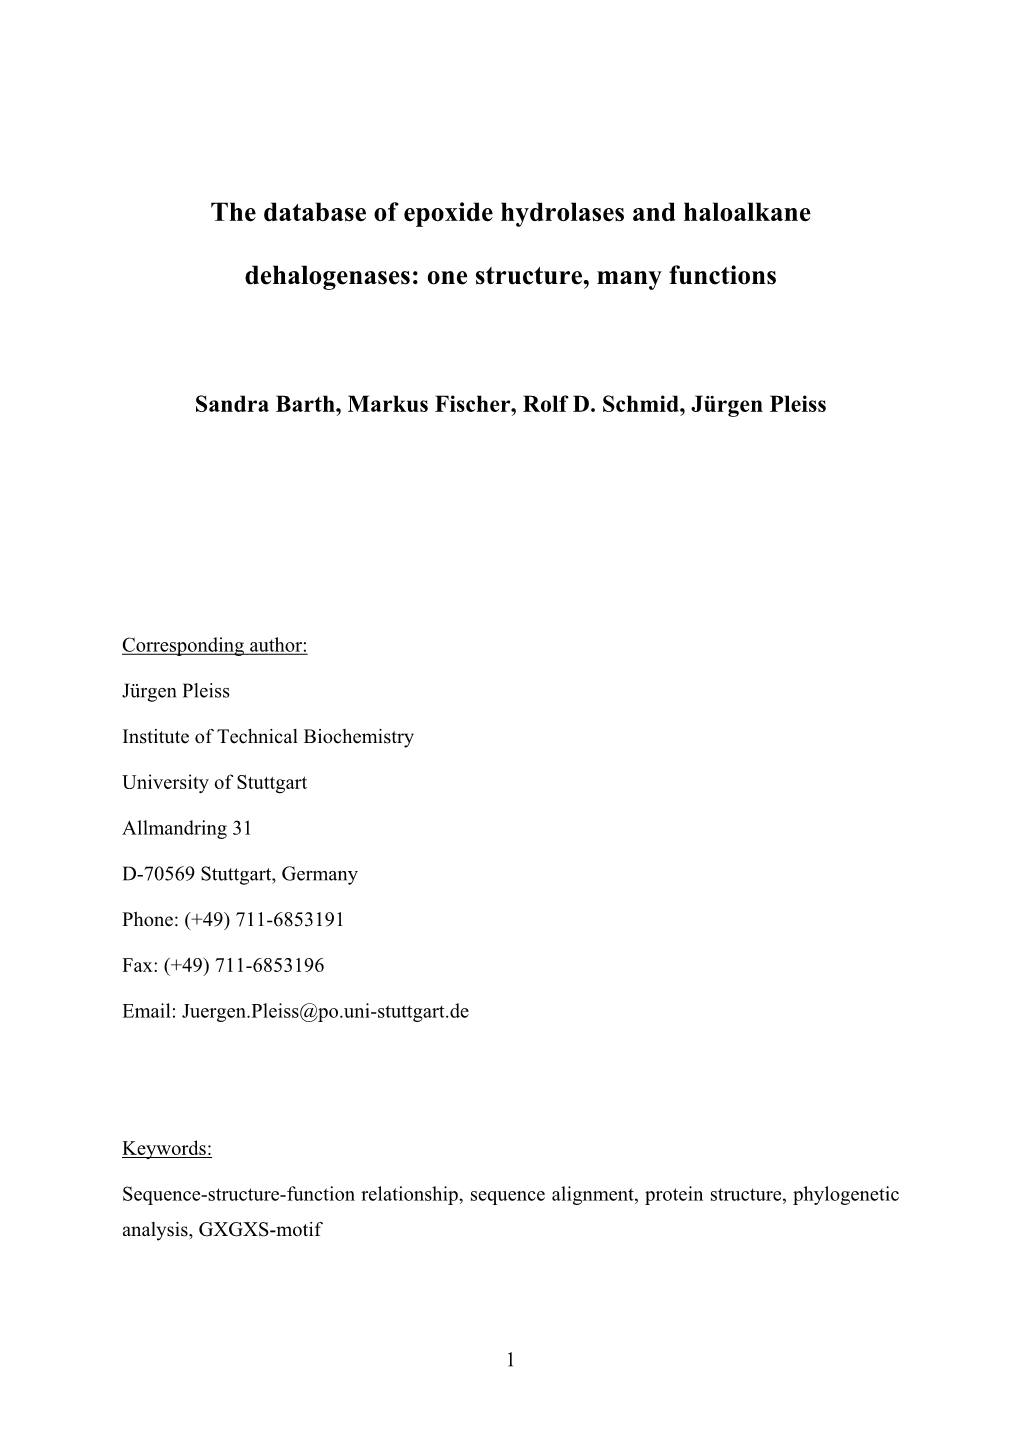 The Database of Epoxide Hydrolases and Haloalkane Dehalogenases